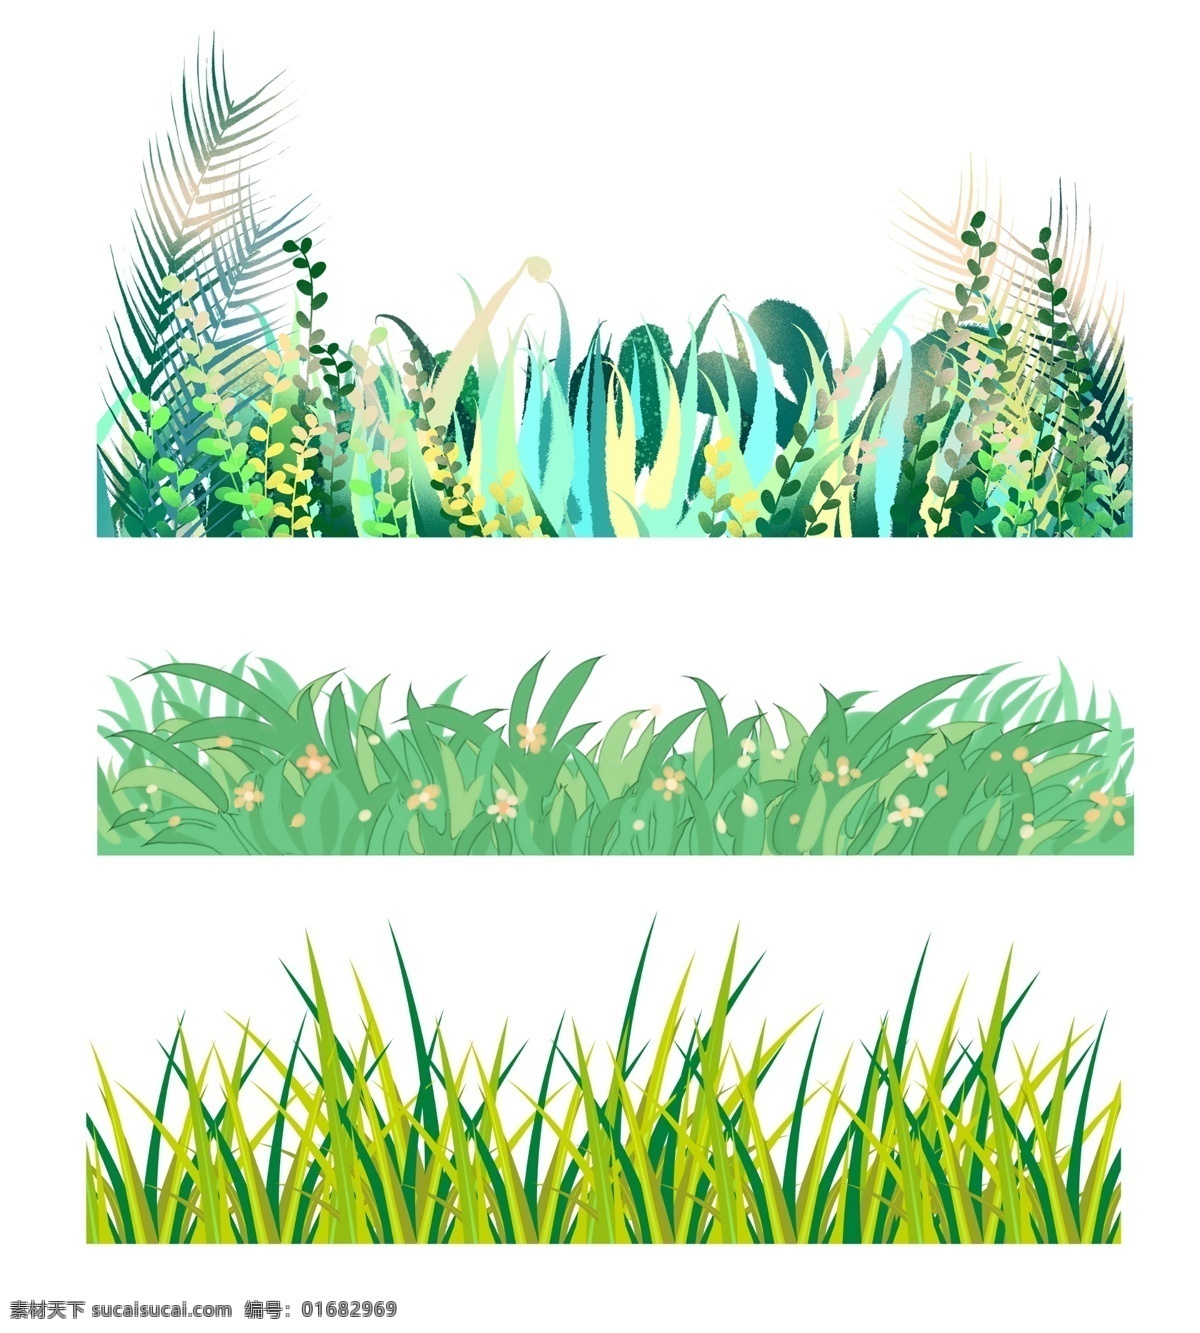 绿色草丛 矢量草丛 小草 草堆 草地 平面设计 绿草 茂盛草丛 卡通草丛